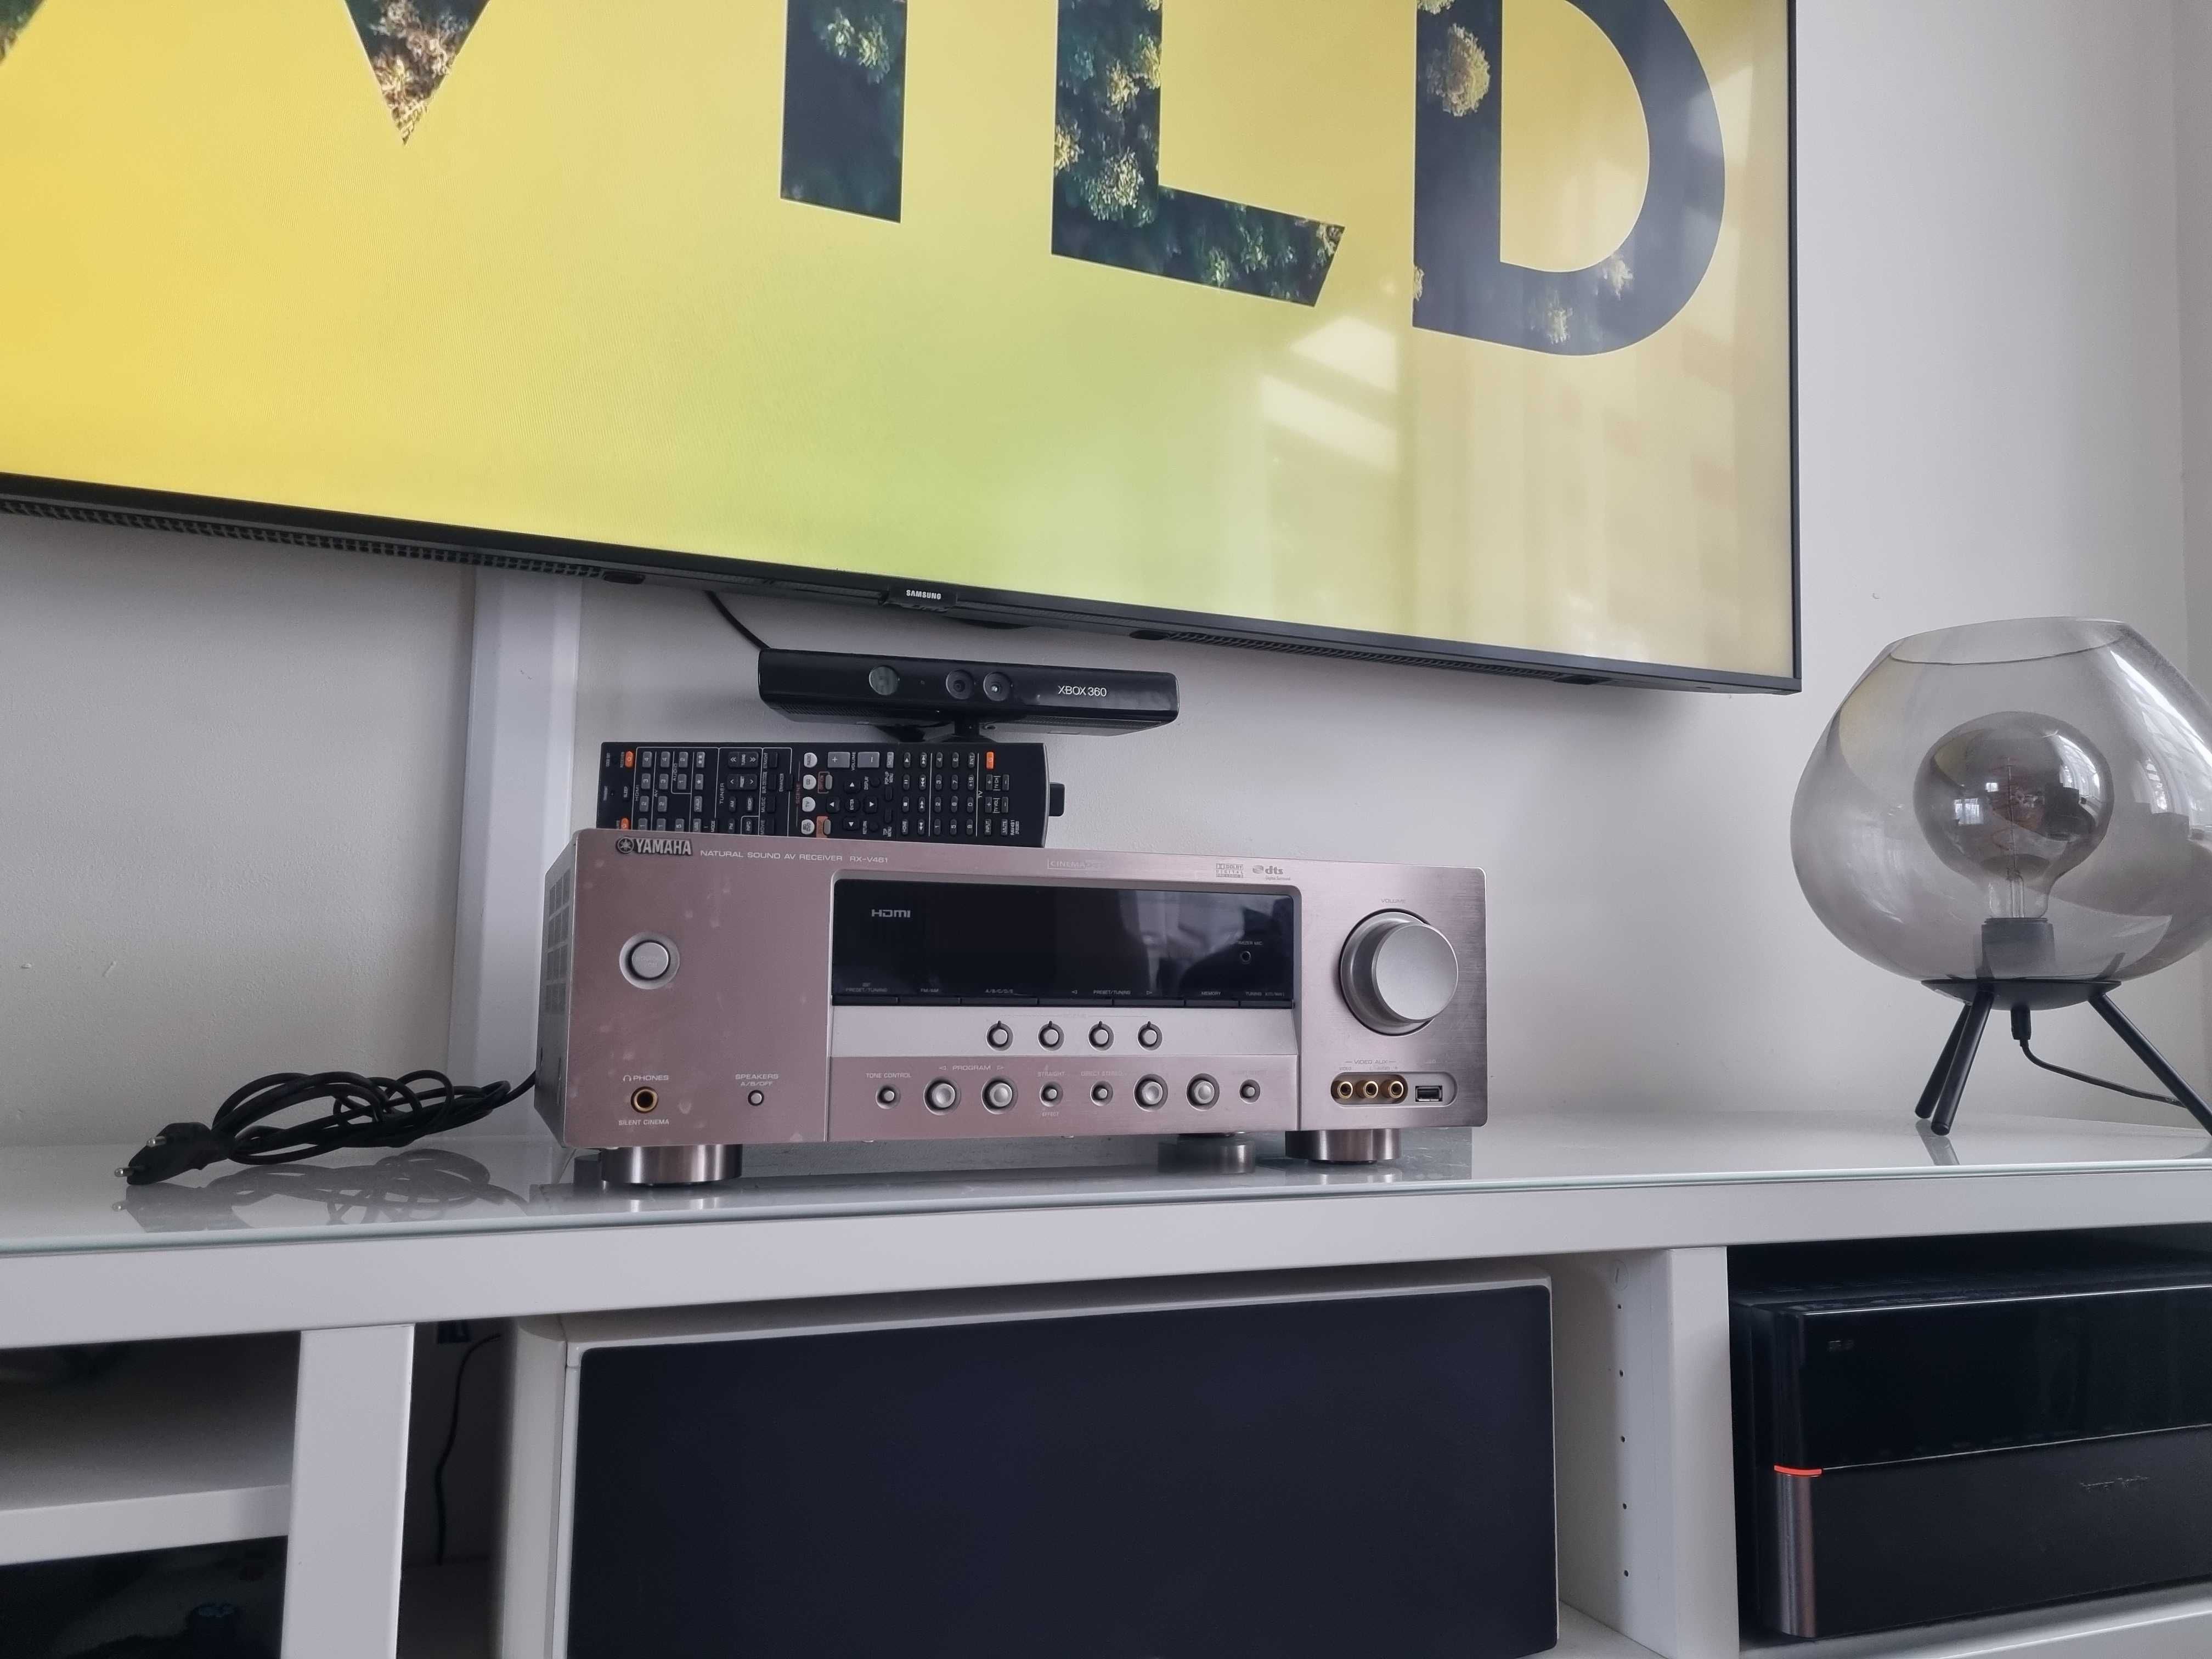 OKAZJA Amplituner wzmacniacz kino domowe stereo Yamaha rxv461 hdmi usb